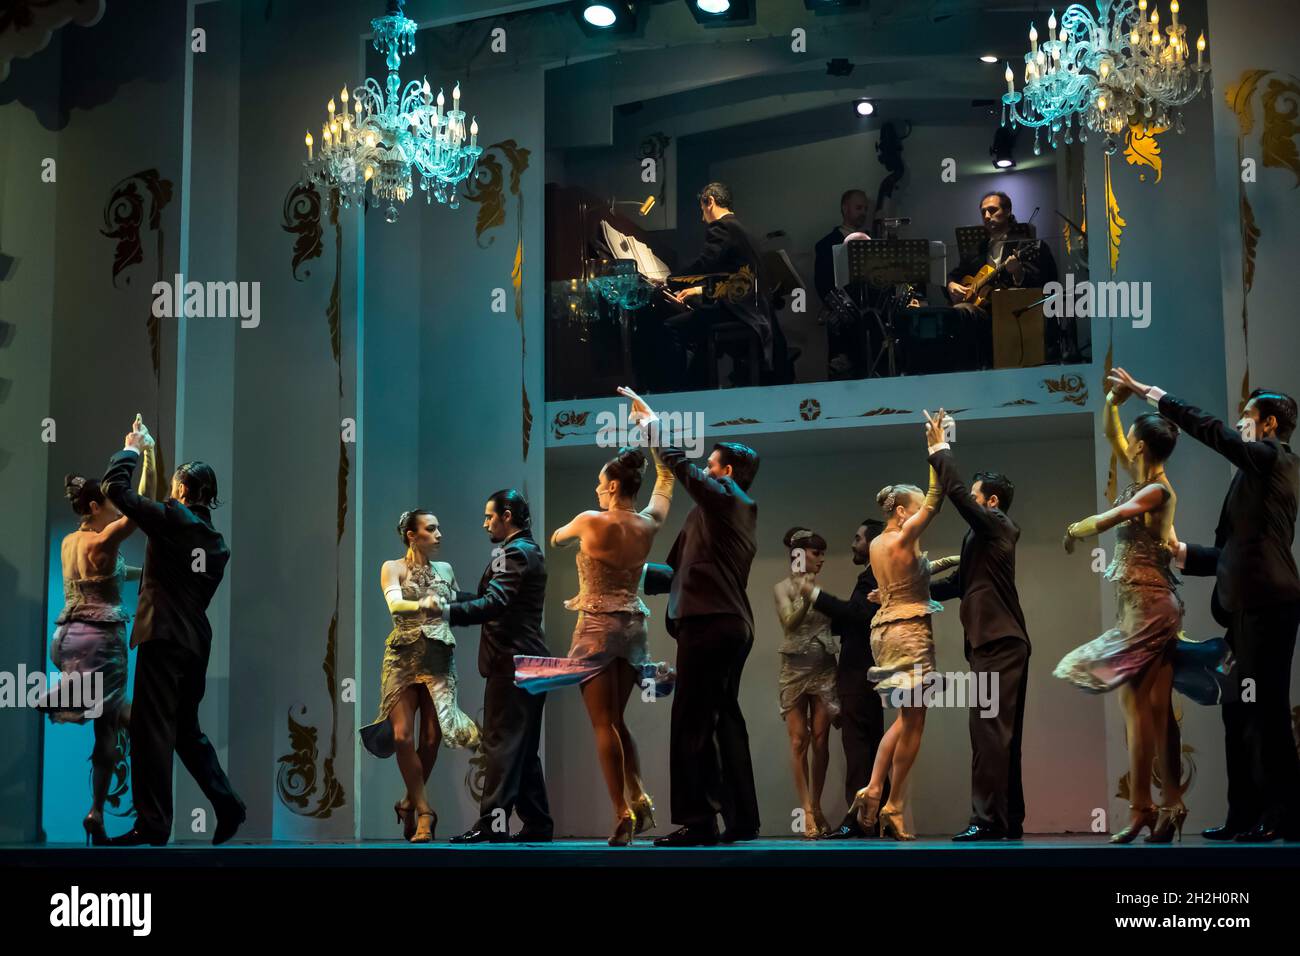 Ripresa orizzontale di un gruppo di ballerini in un'esibizione di tango, con musica Astor Piazzola, nello storico Café de los Angelitos, Congreso, Buenos Aires Foto Stock